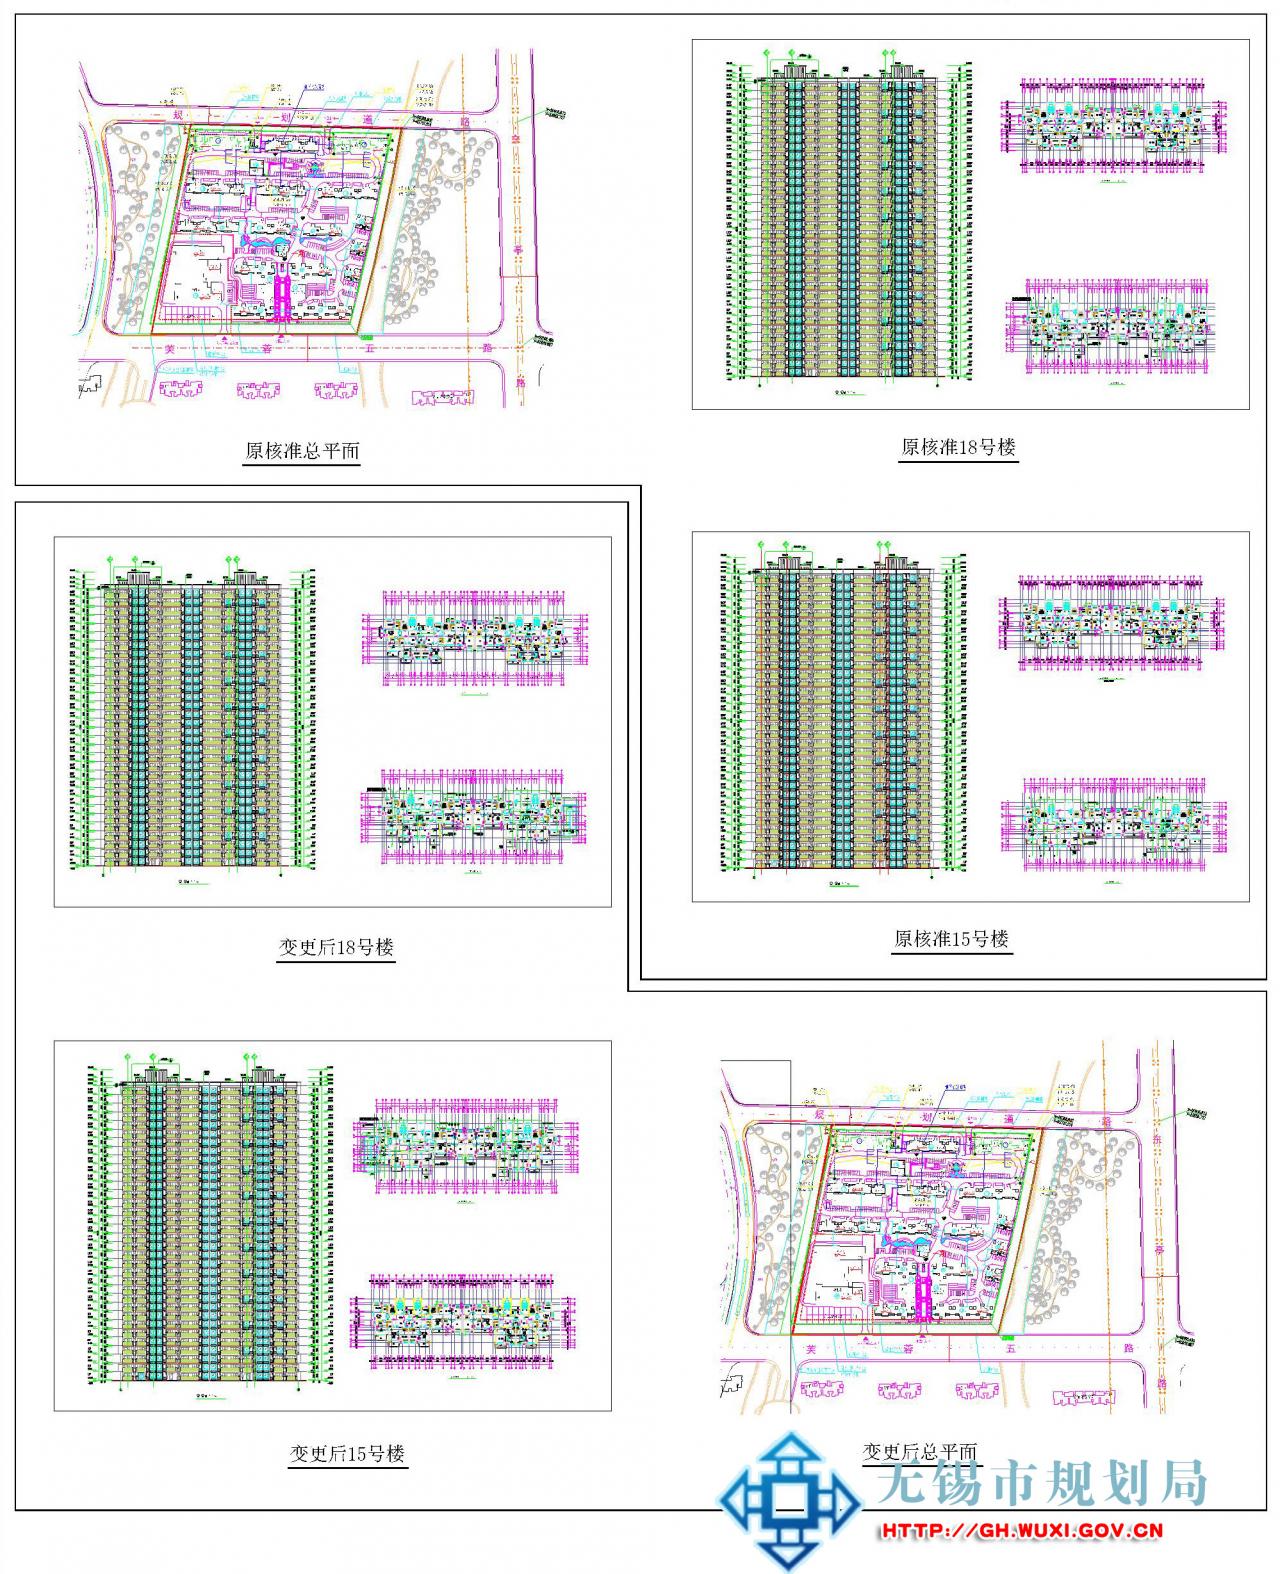 XDG-2010-75号地块开发建设商住用房项目（三期）15#、18#房建设工程规划许可证变更（批前公示）